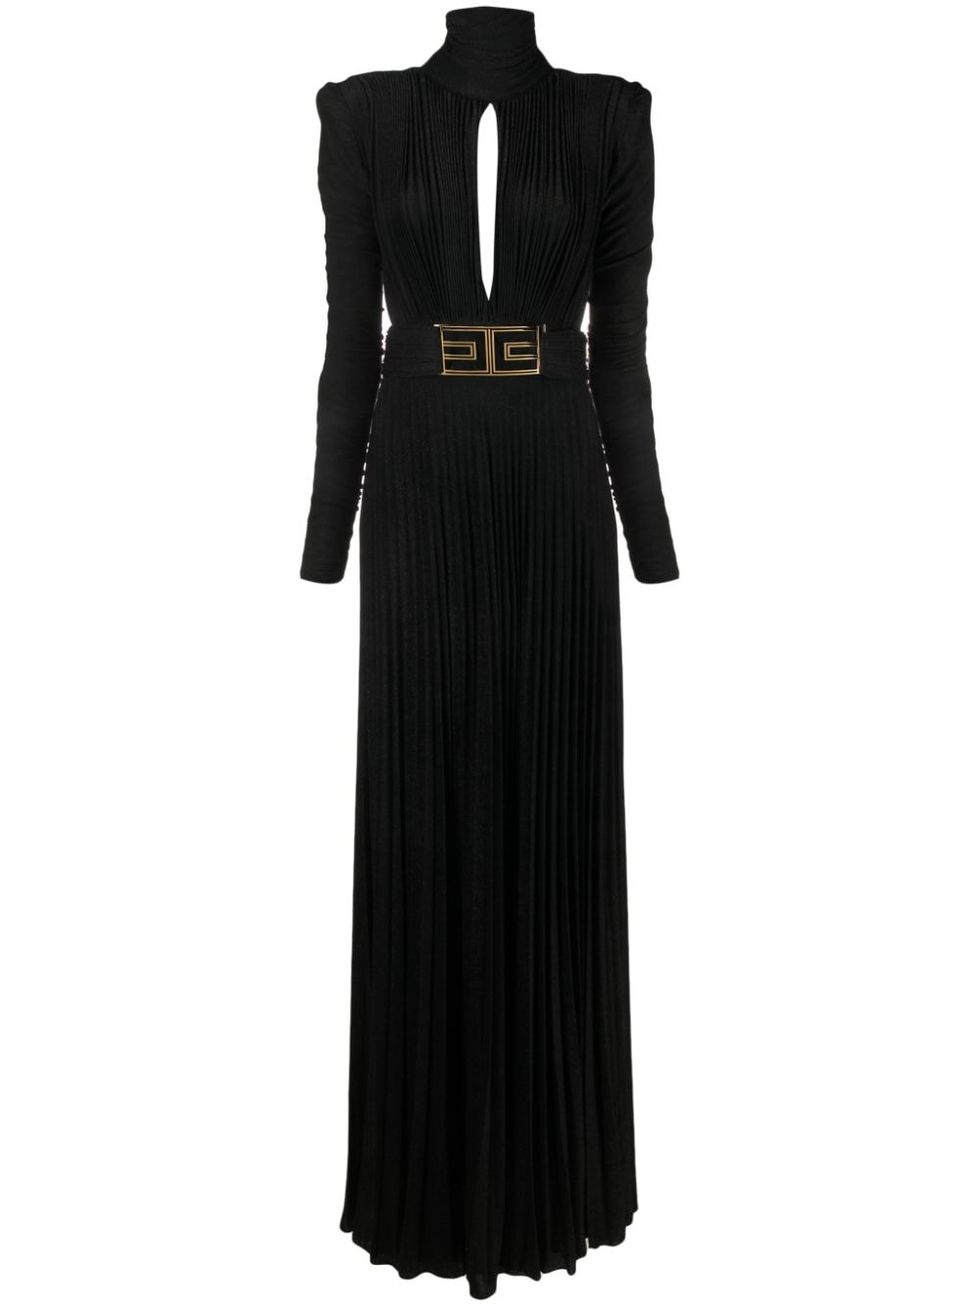 a black dress with a gold belt